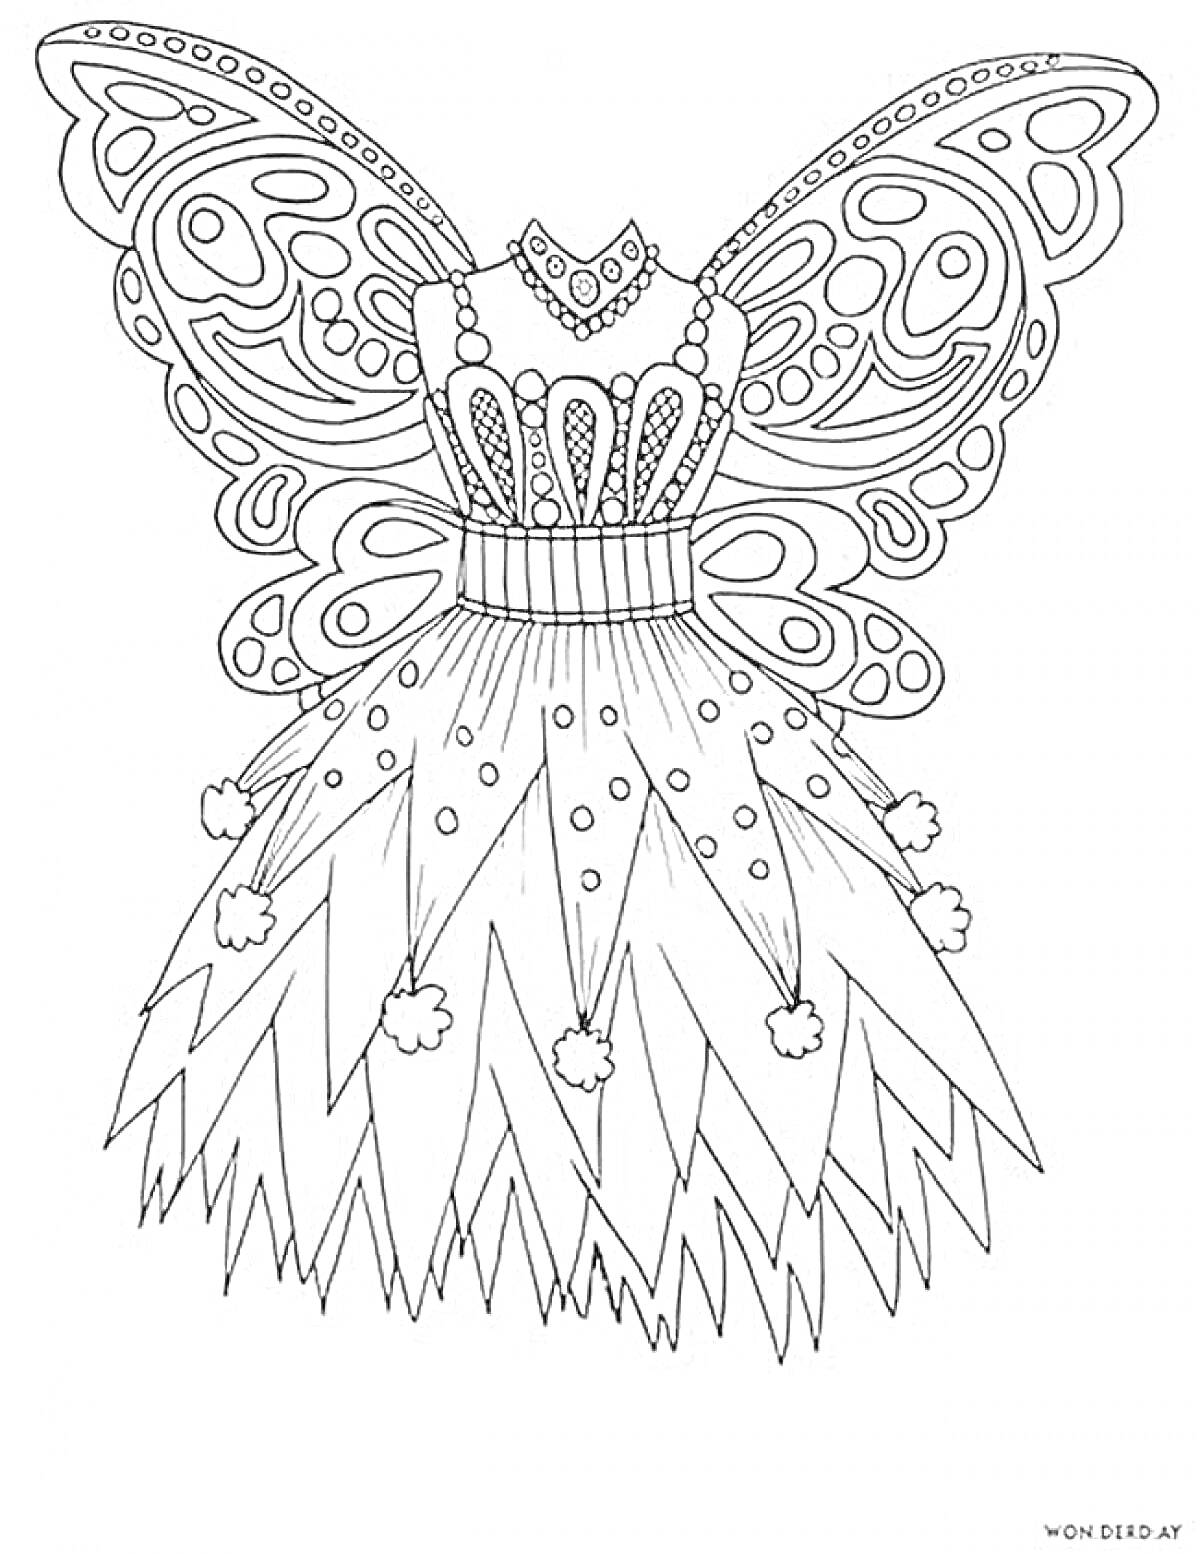 Раскраска Платье-фея с крыльями и элементами украшений на платье